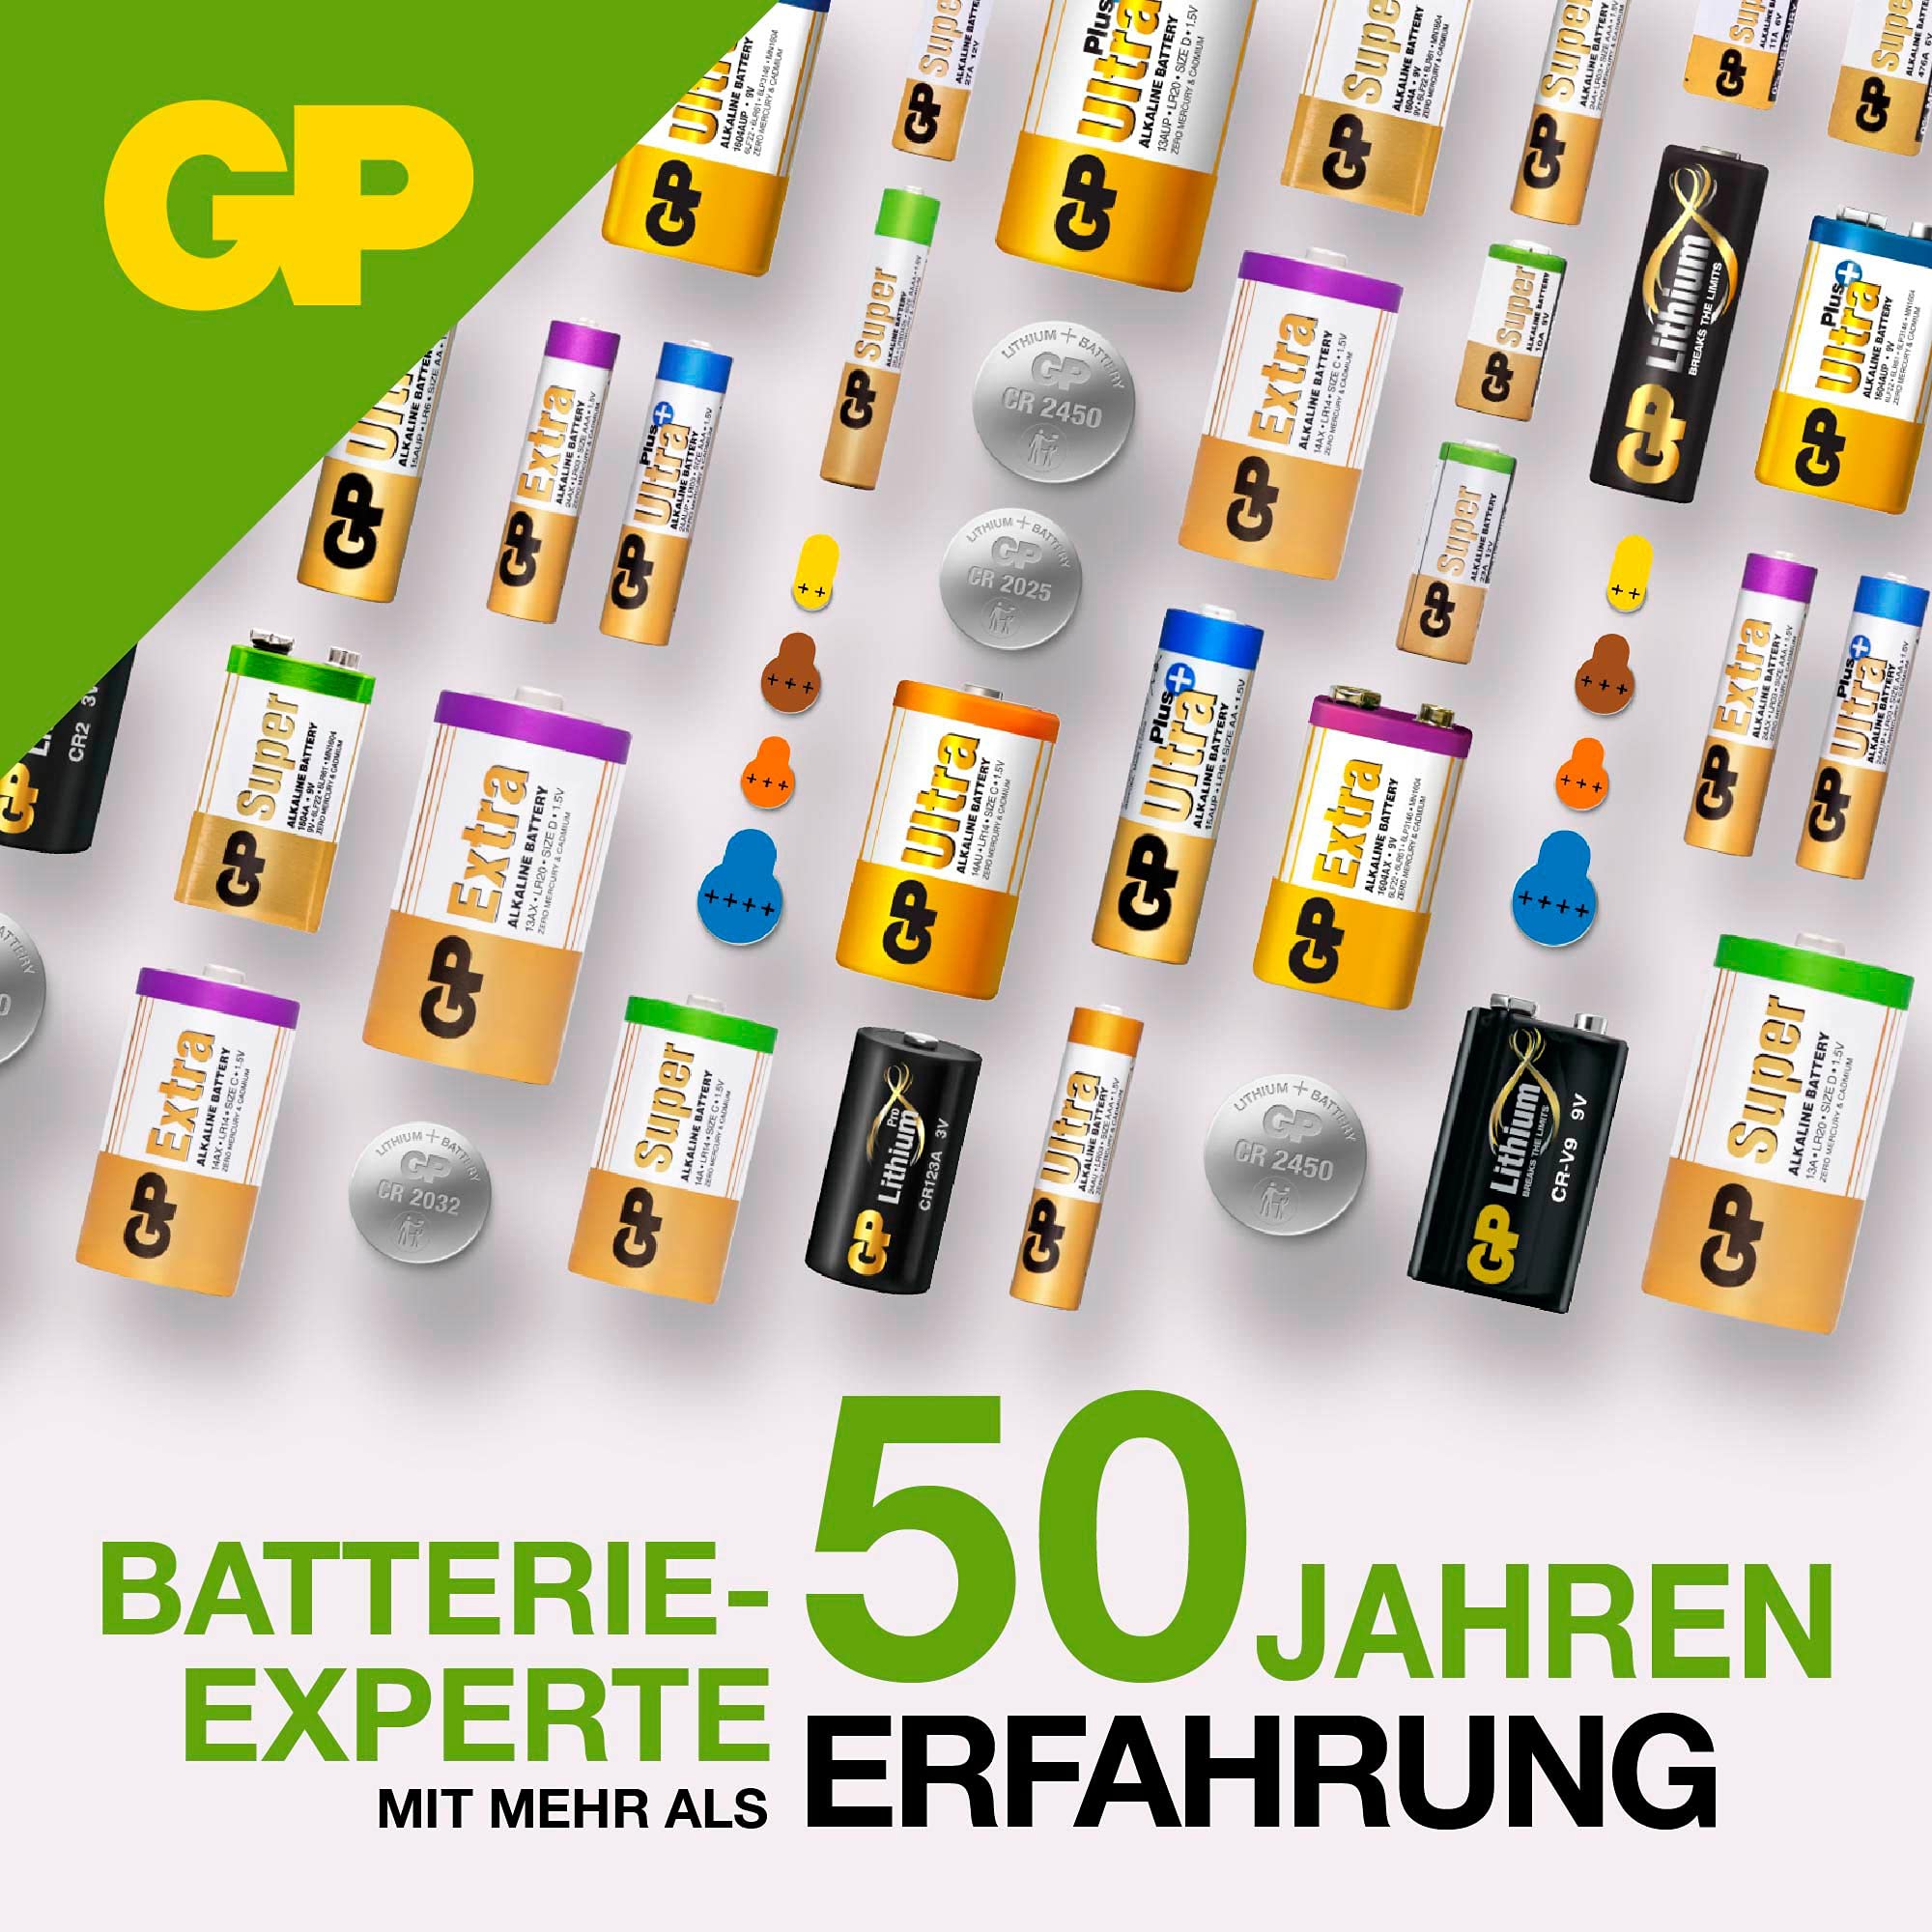 kenable GP Alkaline Cell Battery LR41 192 1.5V [10 Pack]